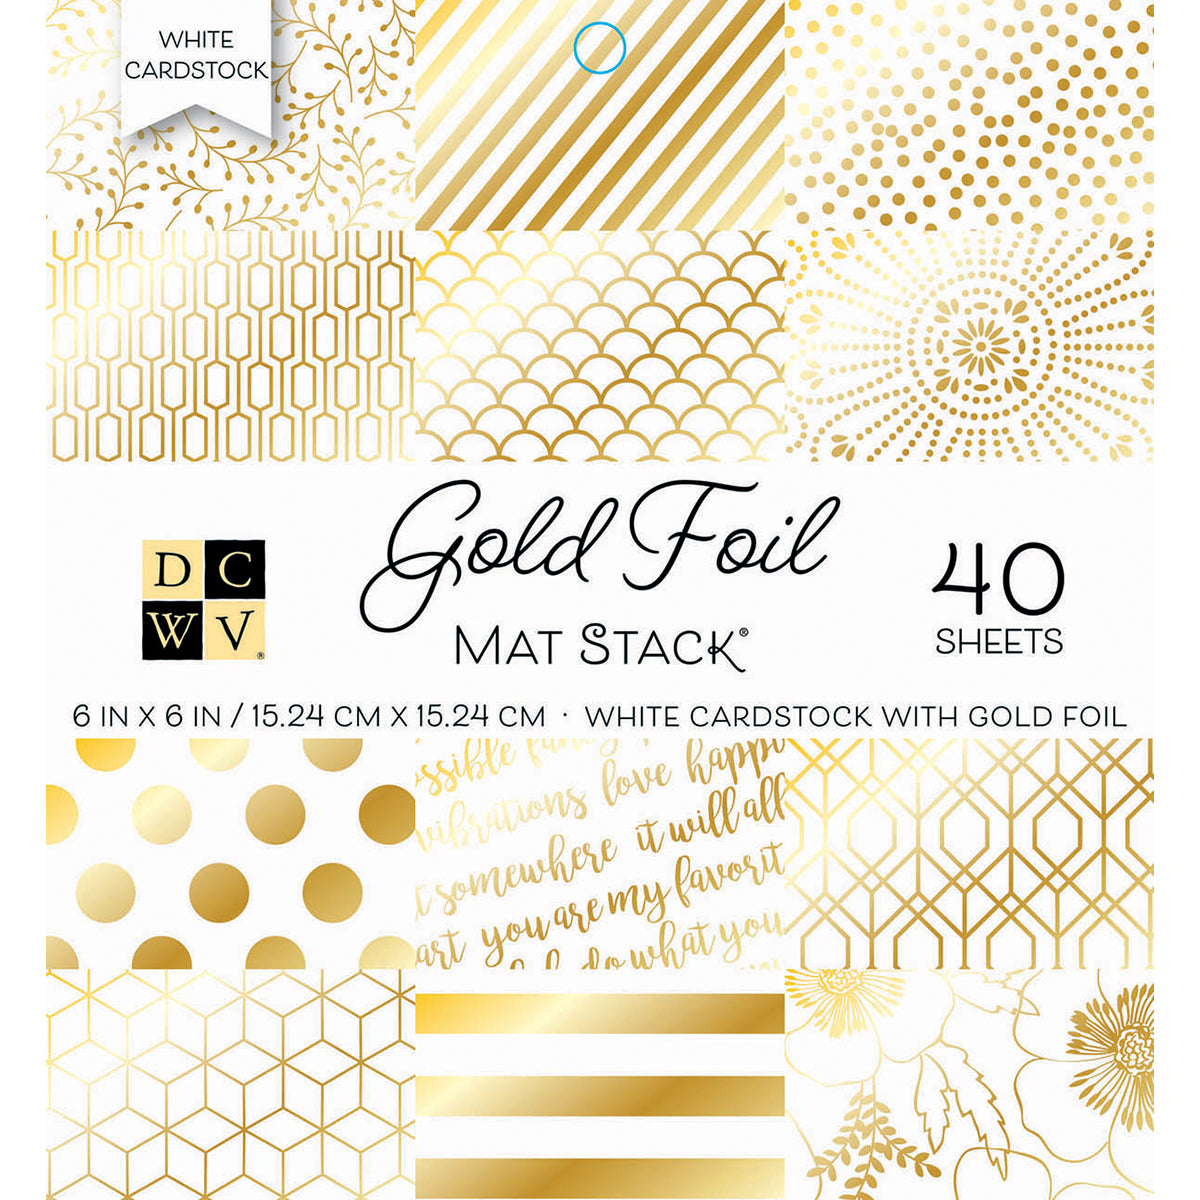 Desecraft 12x12 in Gold Foil Paper Pad Scrapbook Cardstock Decorative